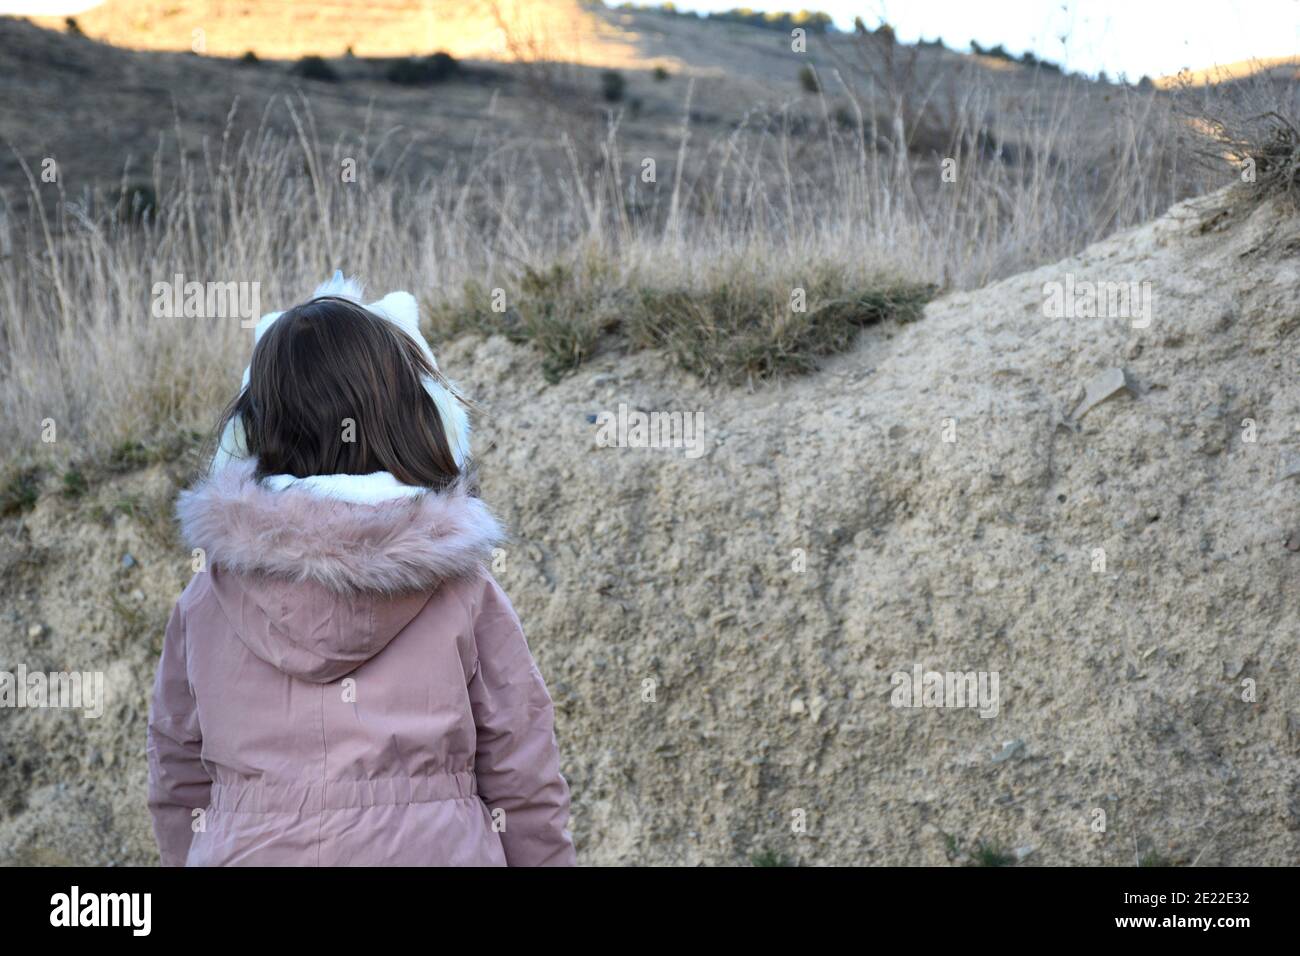 Jeune fille de cinq ans avec une veste rose et un bandeau unicorn sur le dos. À côté d'un remblai dans une zone de champ. Banque D'Images